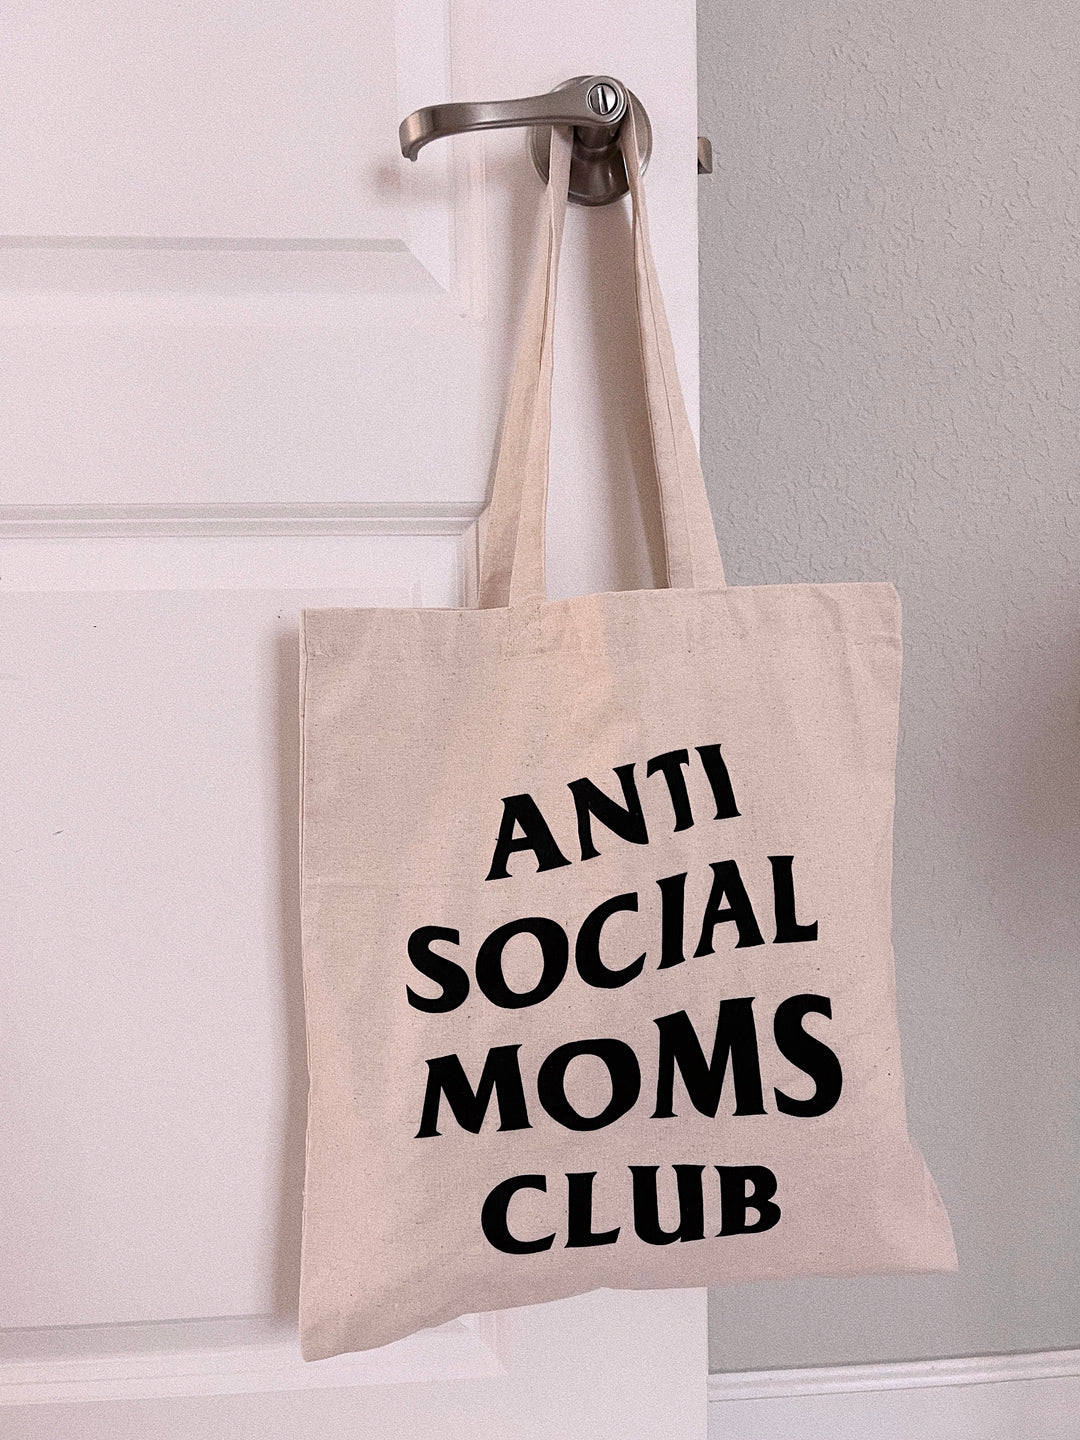 Antisocial Club Totes